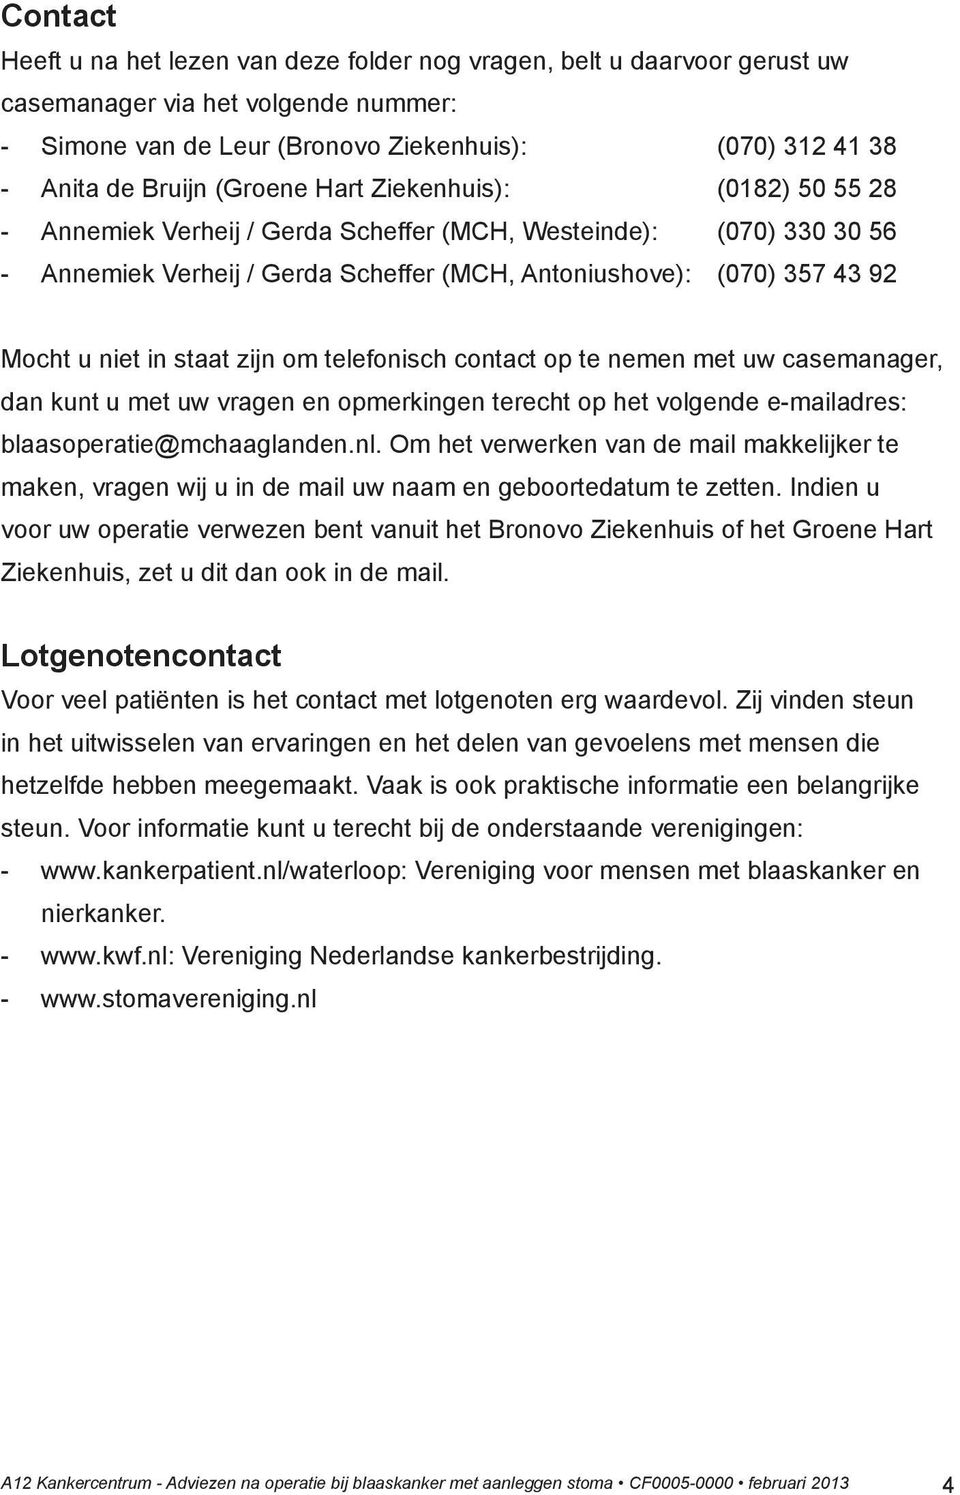 in staat zijn om telefonisch contact op te nemen met uw casemanager, dan kunt u met uw vragen en opmerkingen terecht op het volgende e-mailadres: blaasoperatie@mchaaglanden.nl.